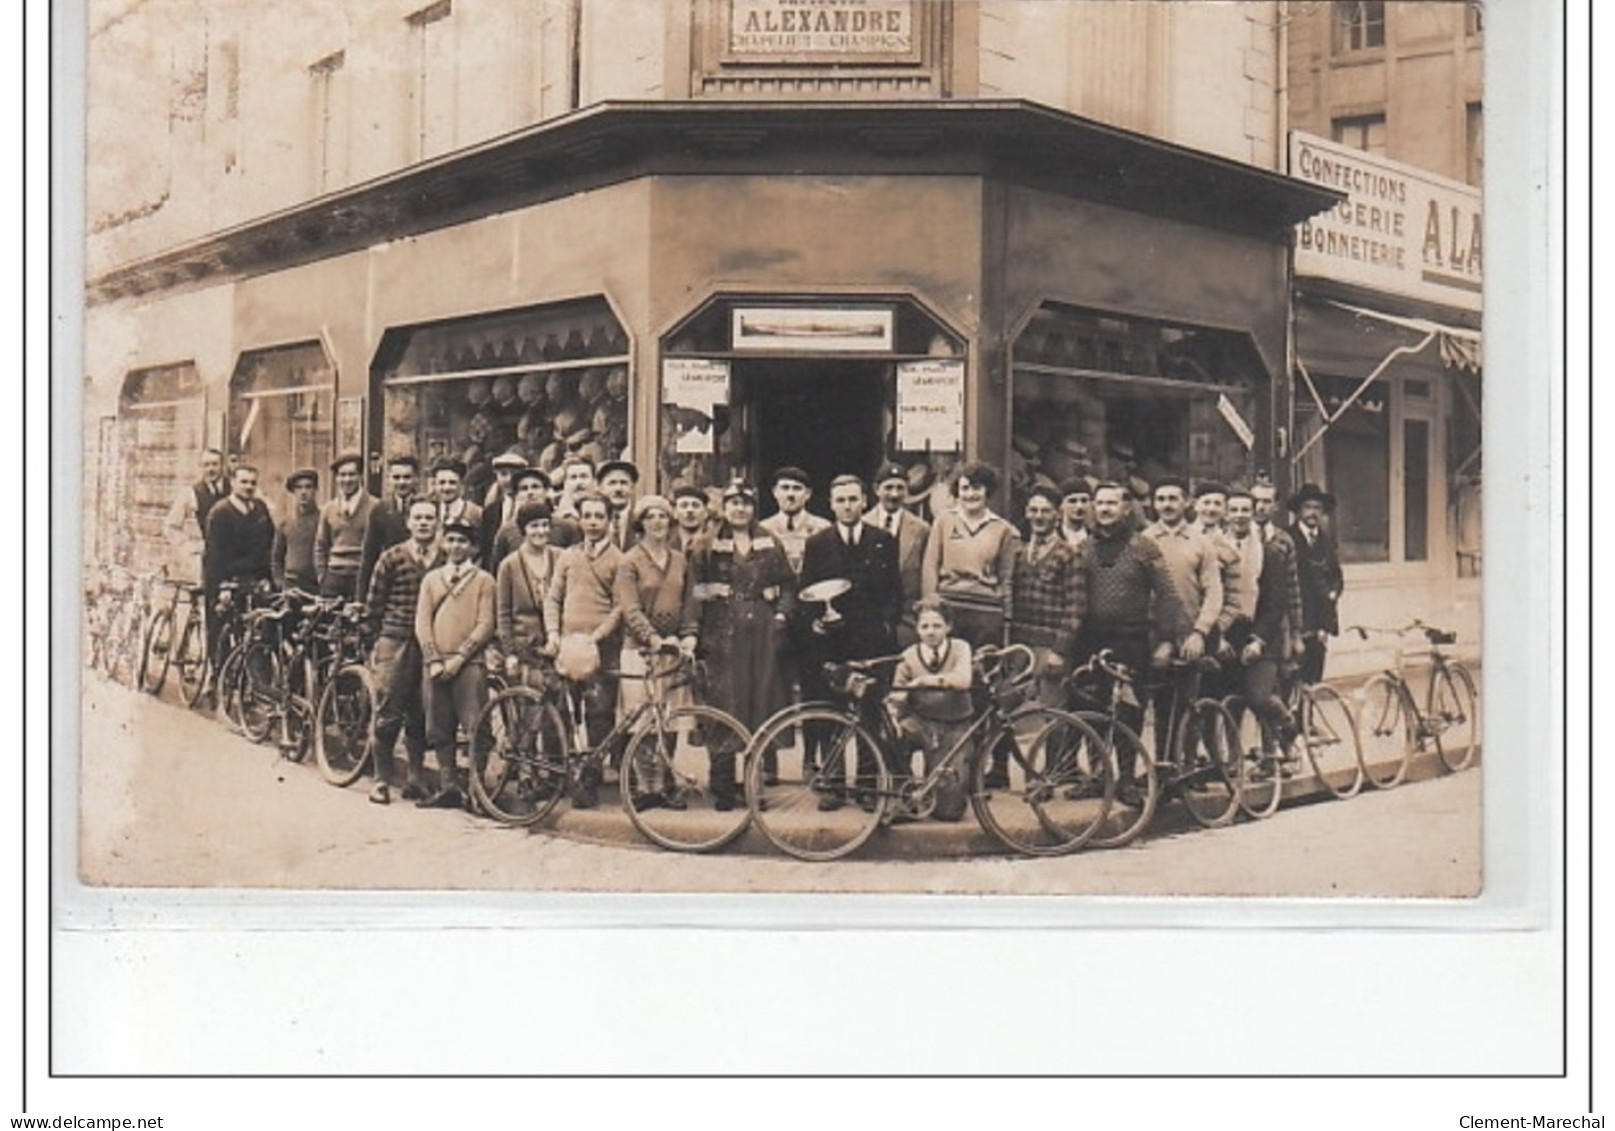 ROUEN : Carte Photo De La Chapellerie ALEXANDRE (avec Les Champions Cyclistes) - Très Bon état - Rouen